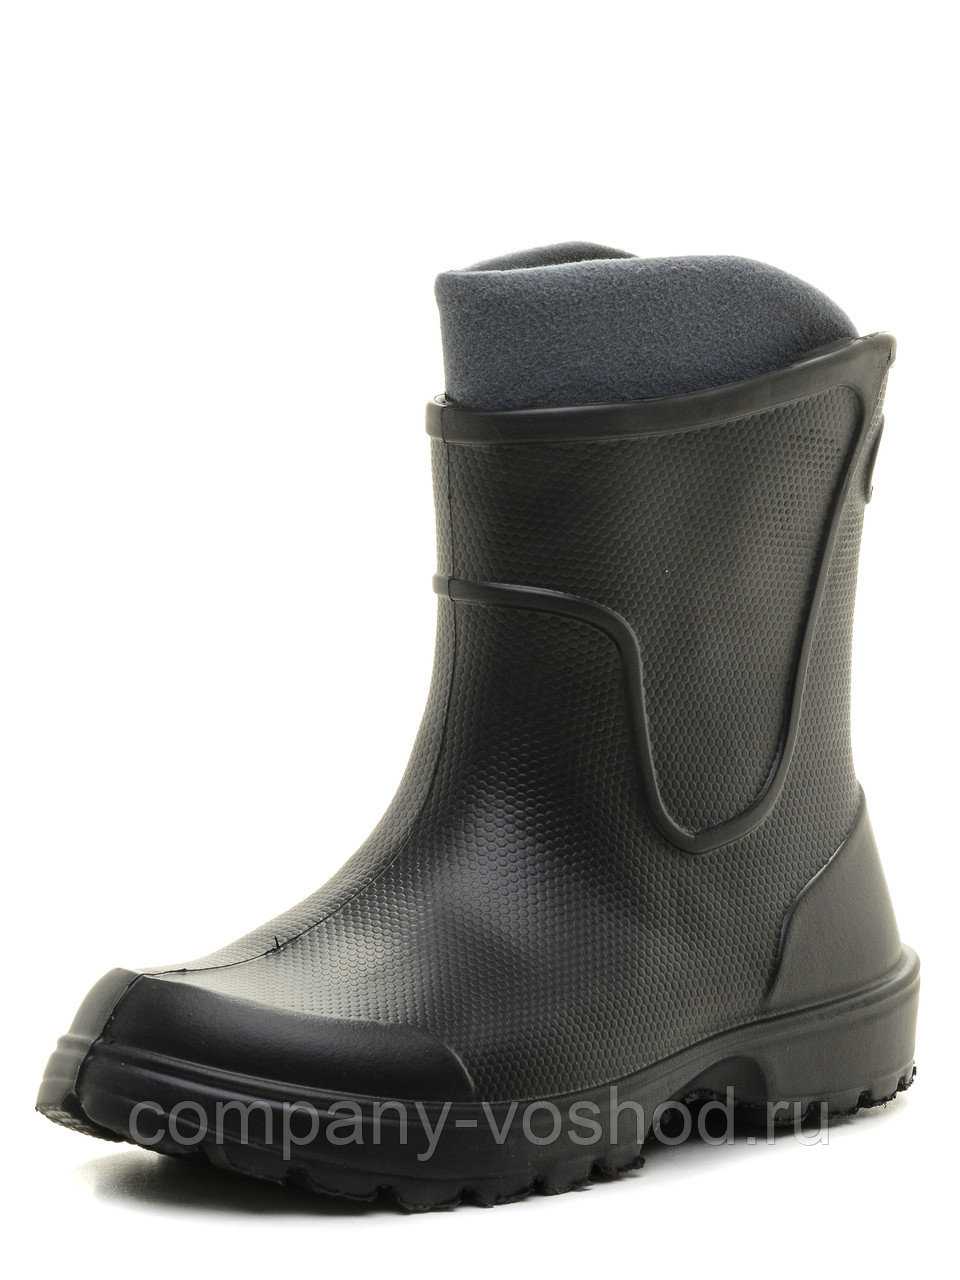 10 надёжных кроссовок и ботинок на осень. можно ходить в дождь и снег